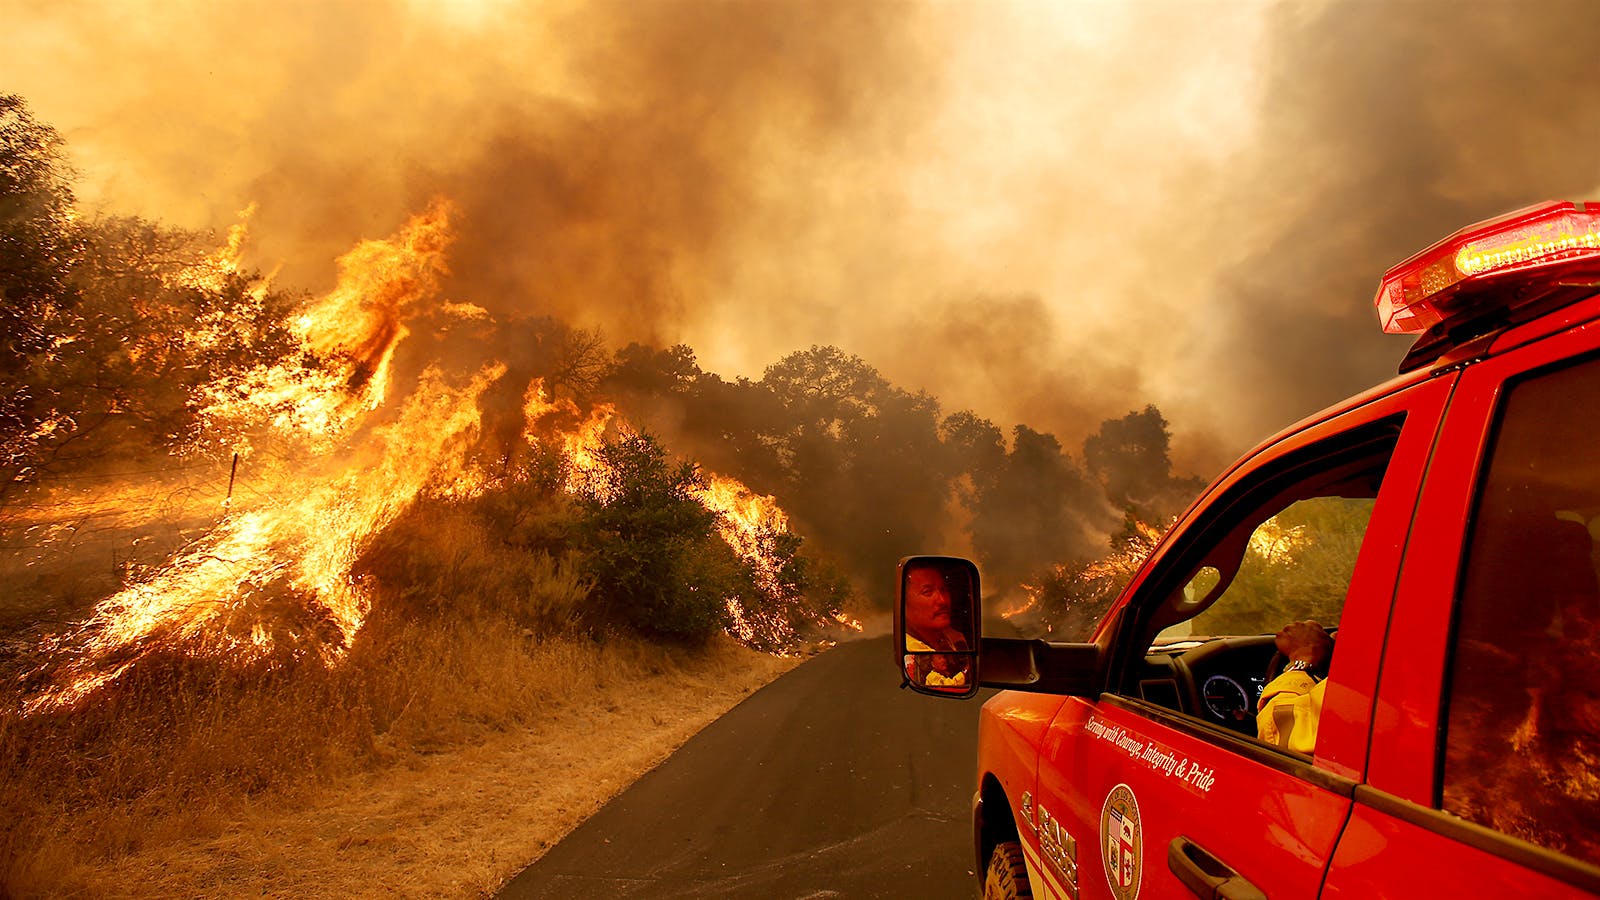 Blaze-y Days of Summer Return with Fires Threatening Mount Eden, Bien Nacido